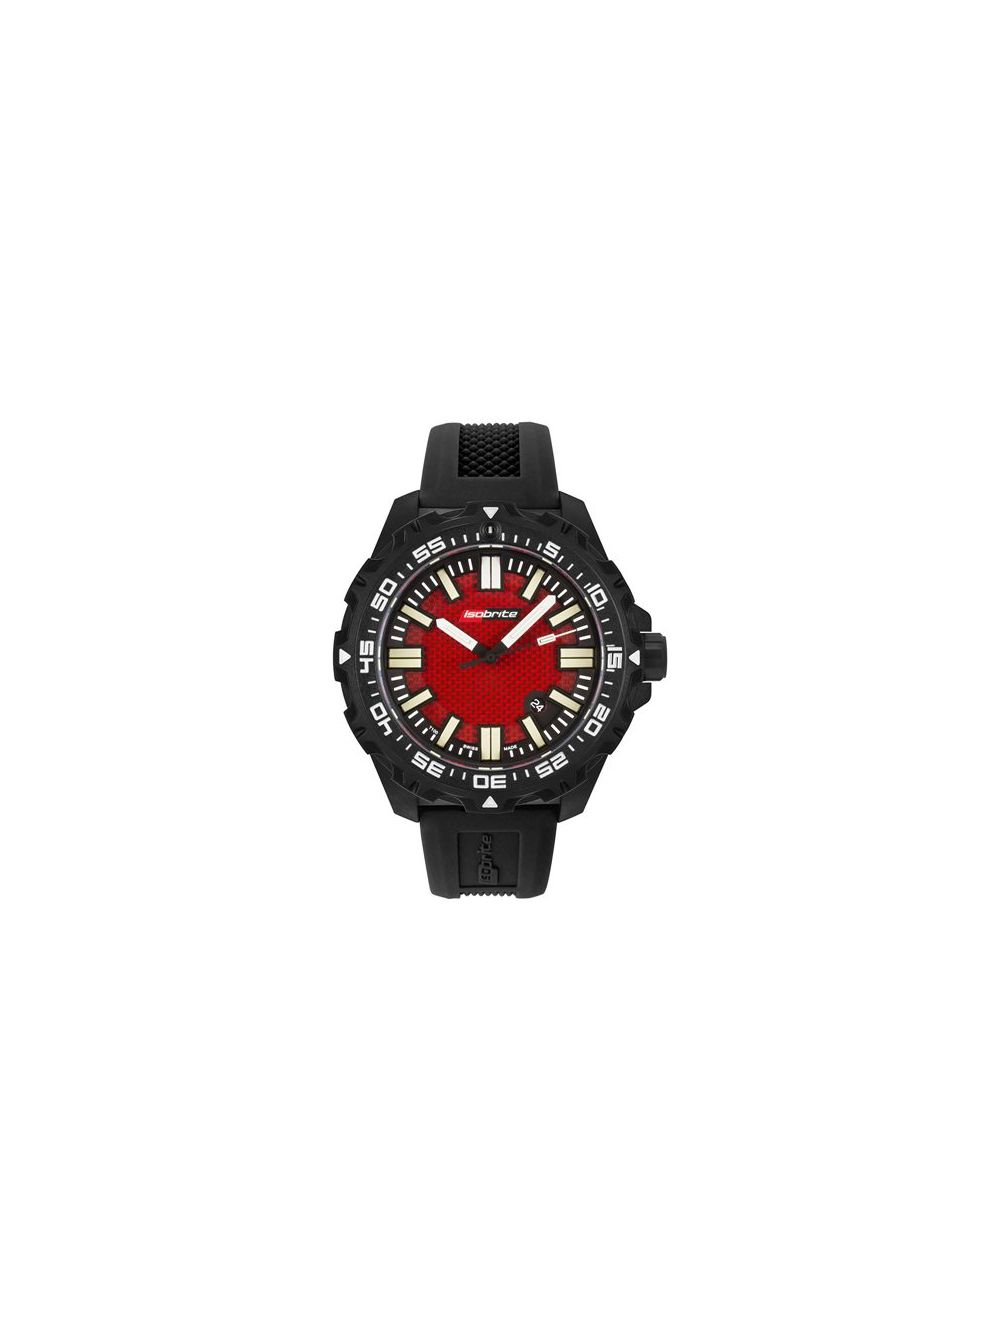 Isobrite Afterburner T100 Tritium Illuminated Watch